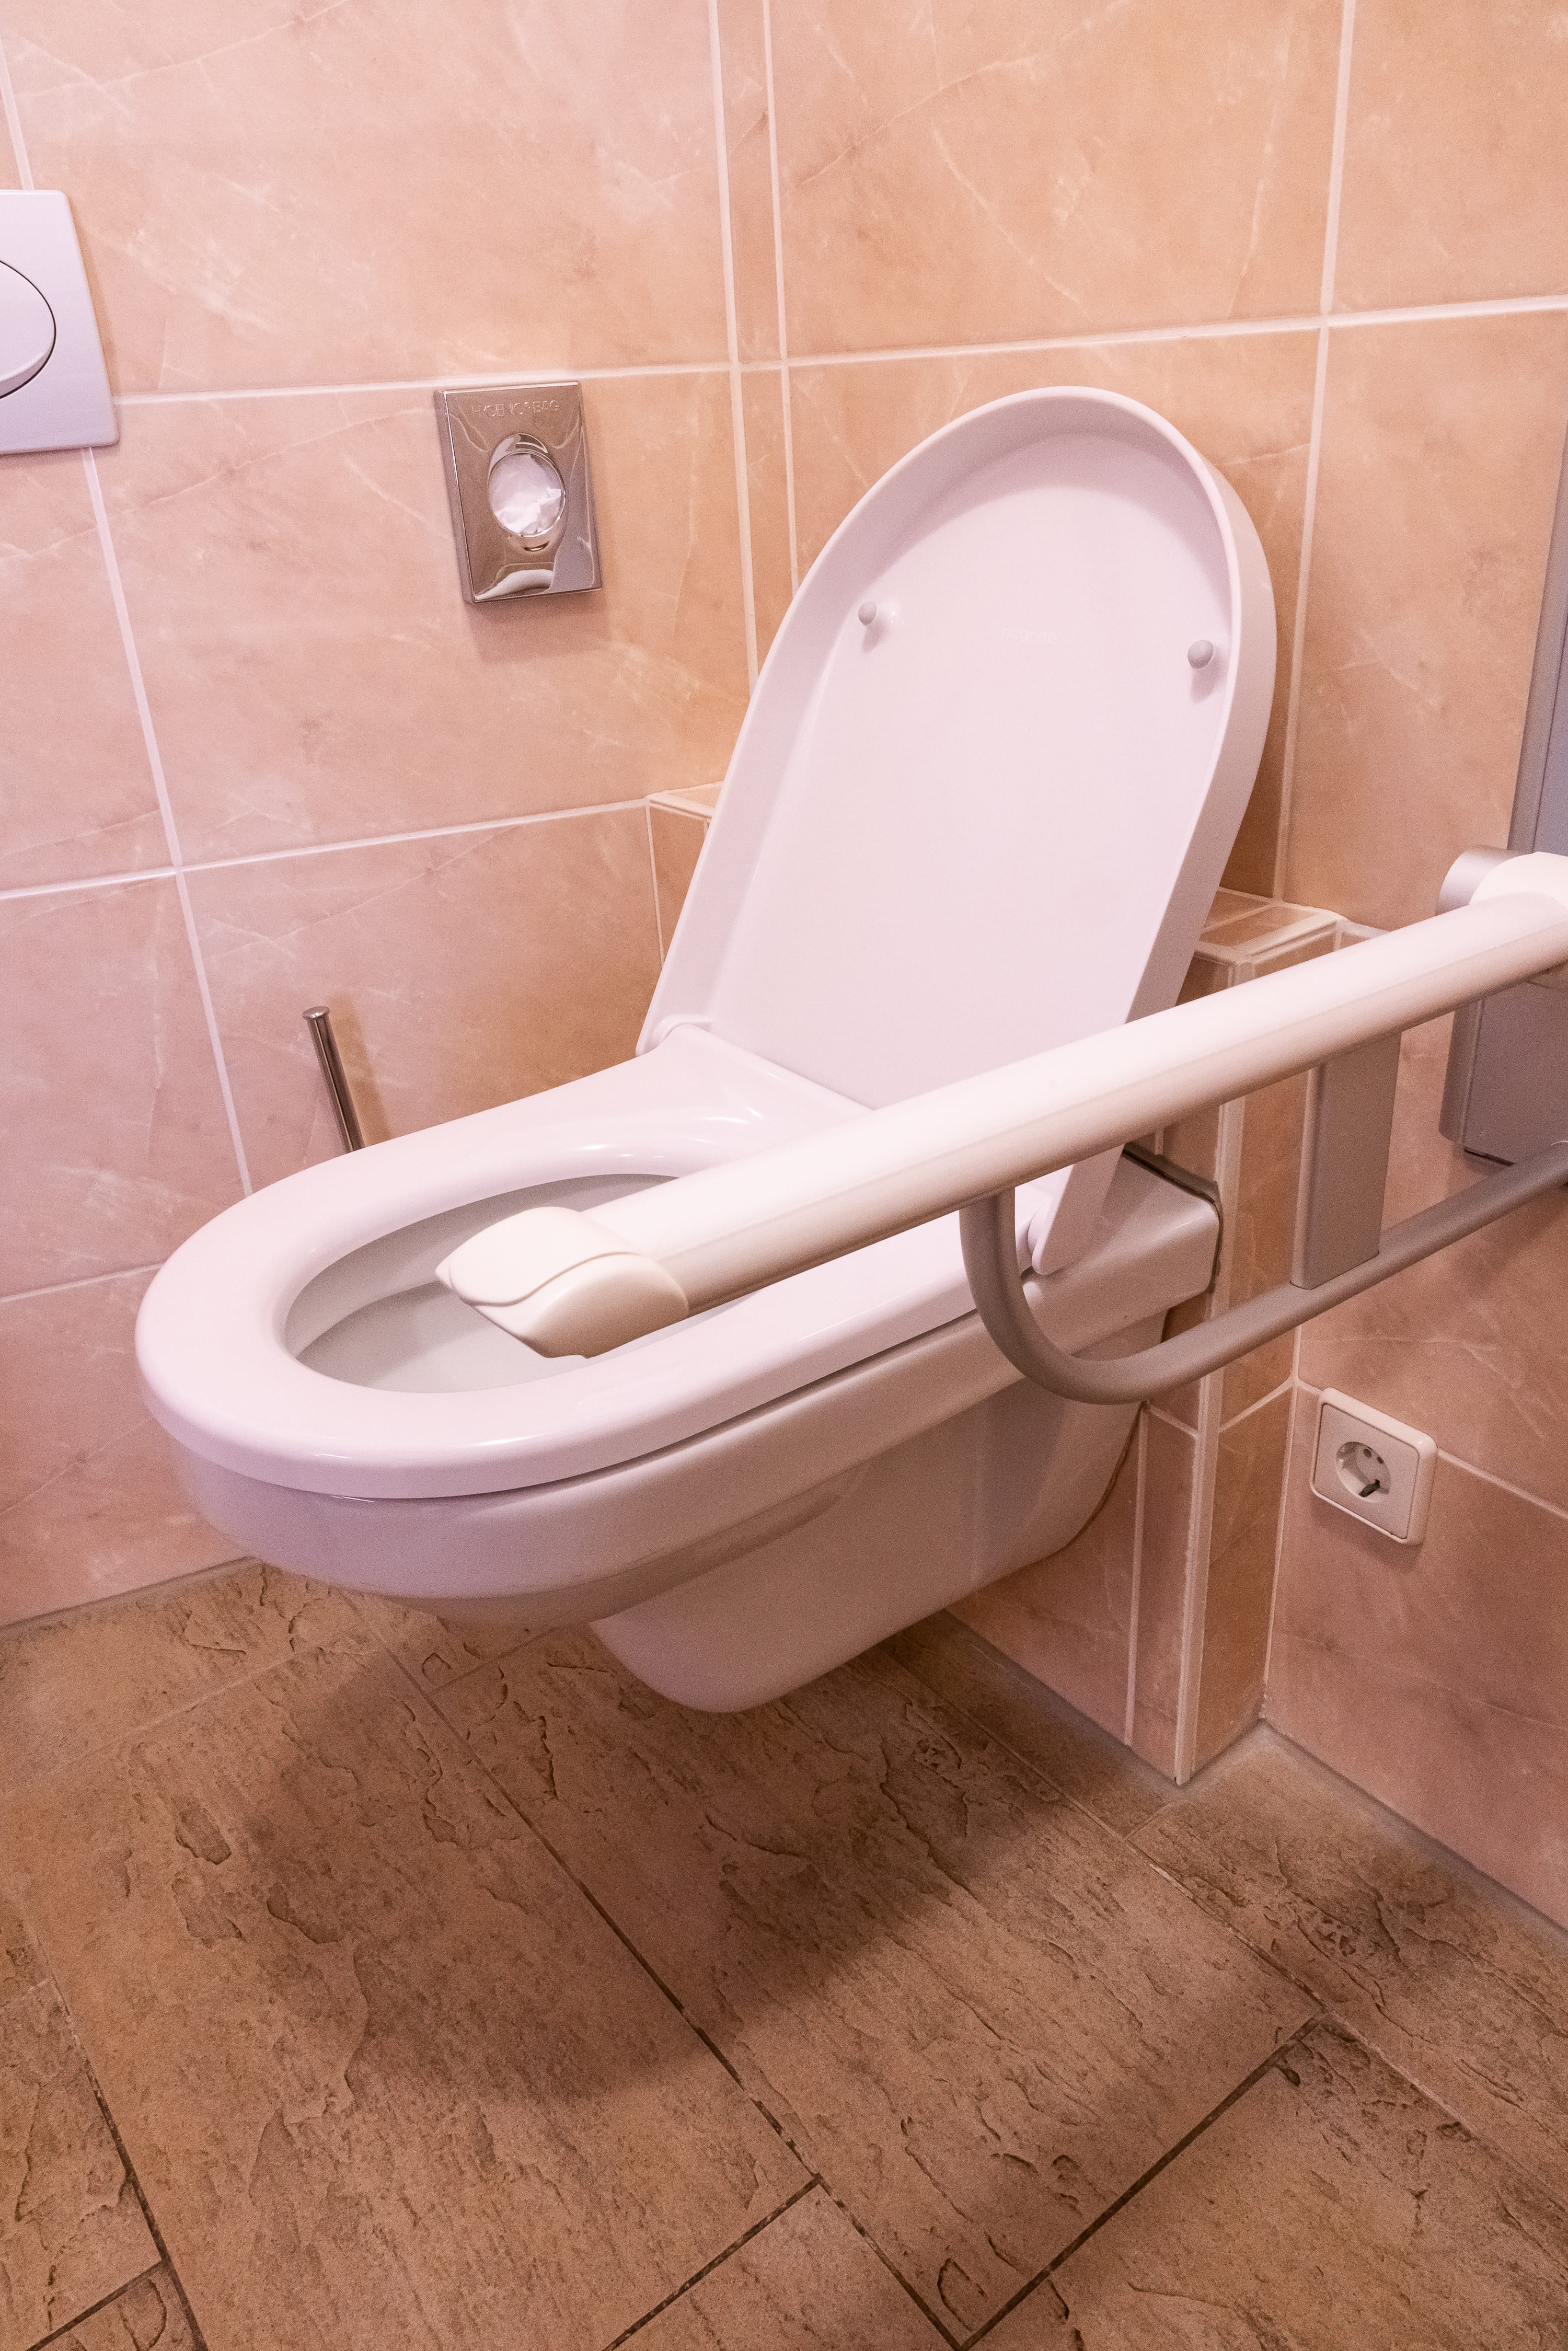 Toilette mit ausklappbarer Armlehne